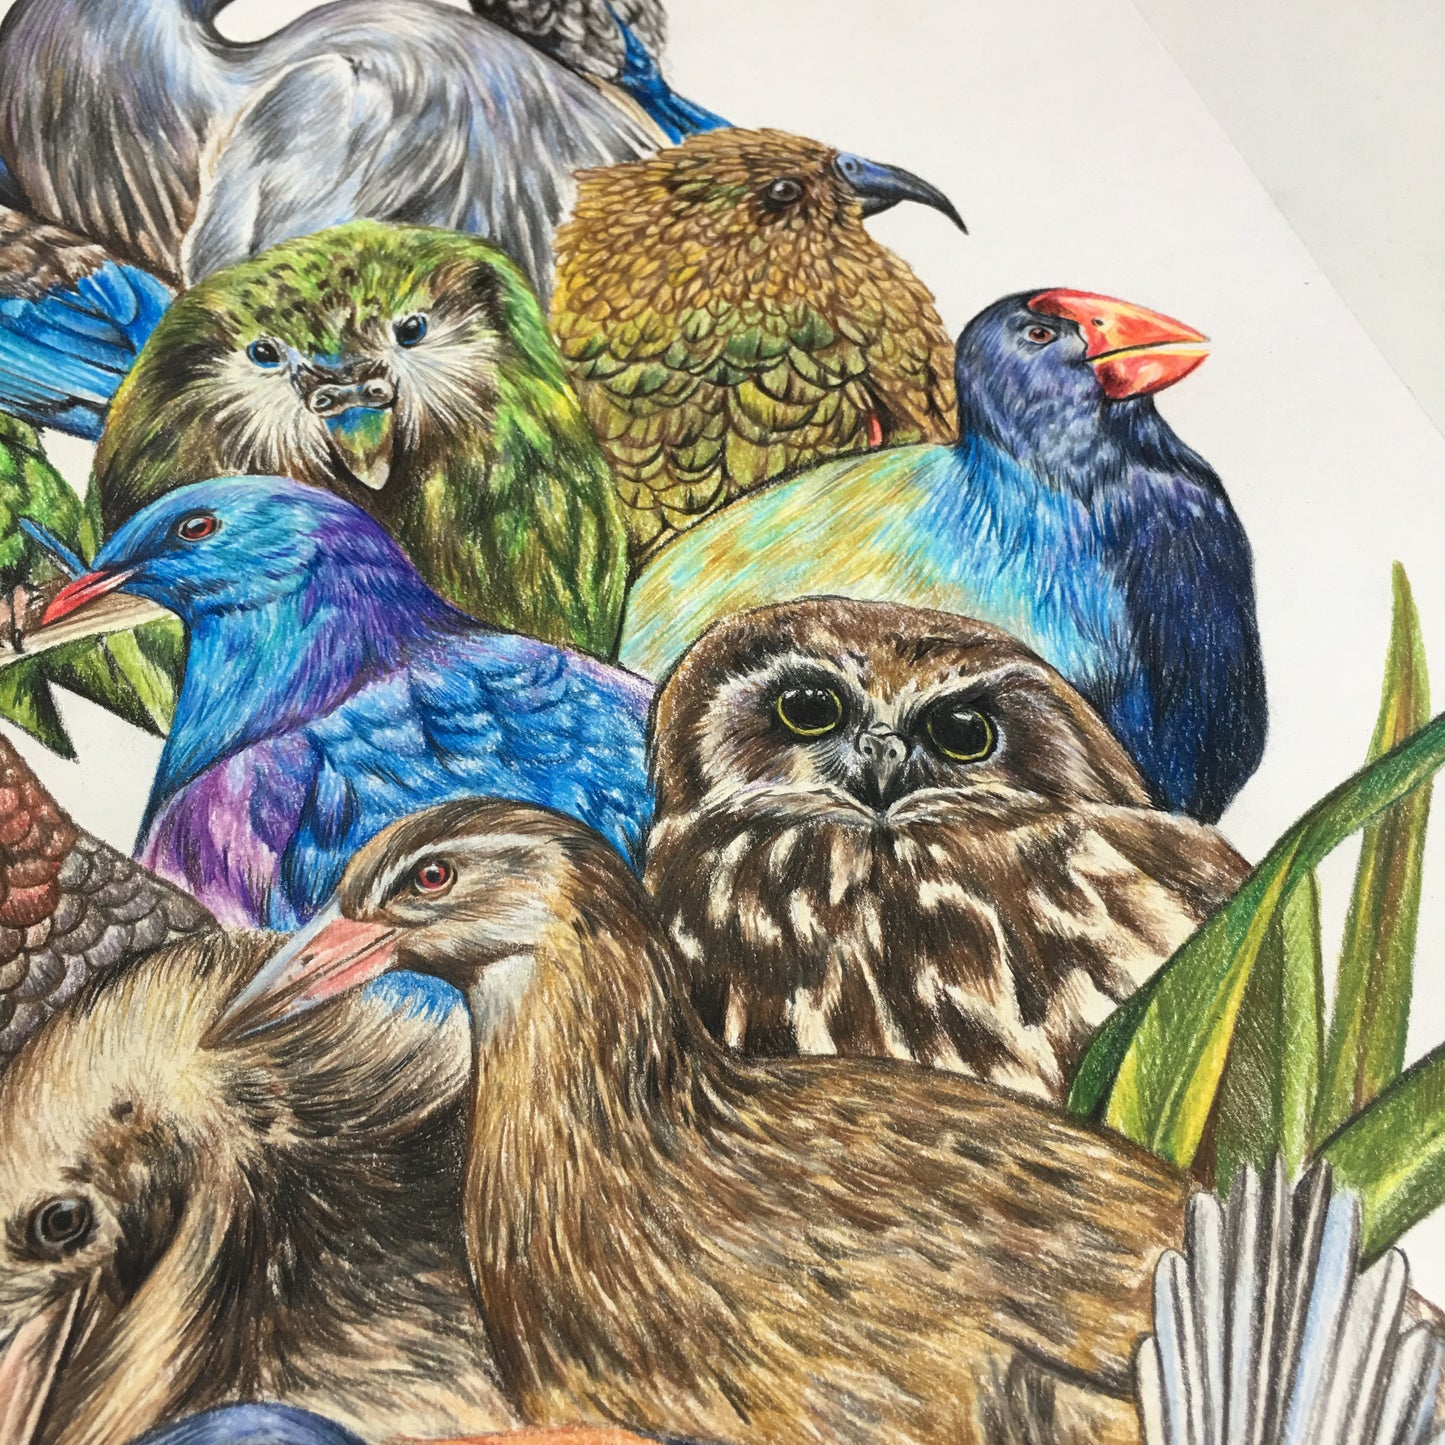 “Perchin” NZ Birds Print